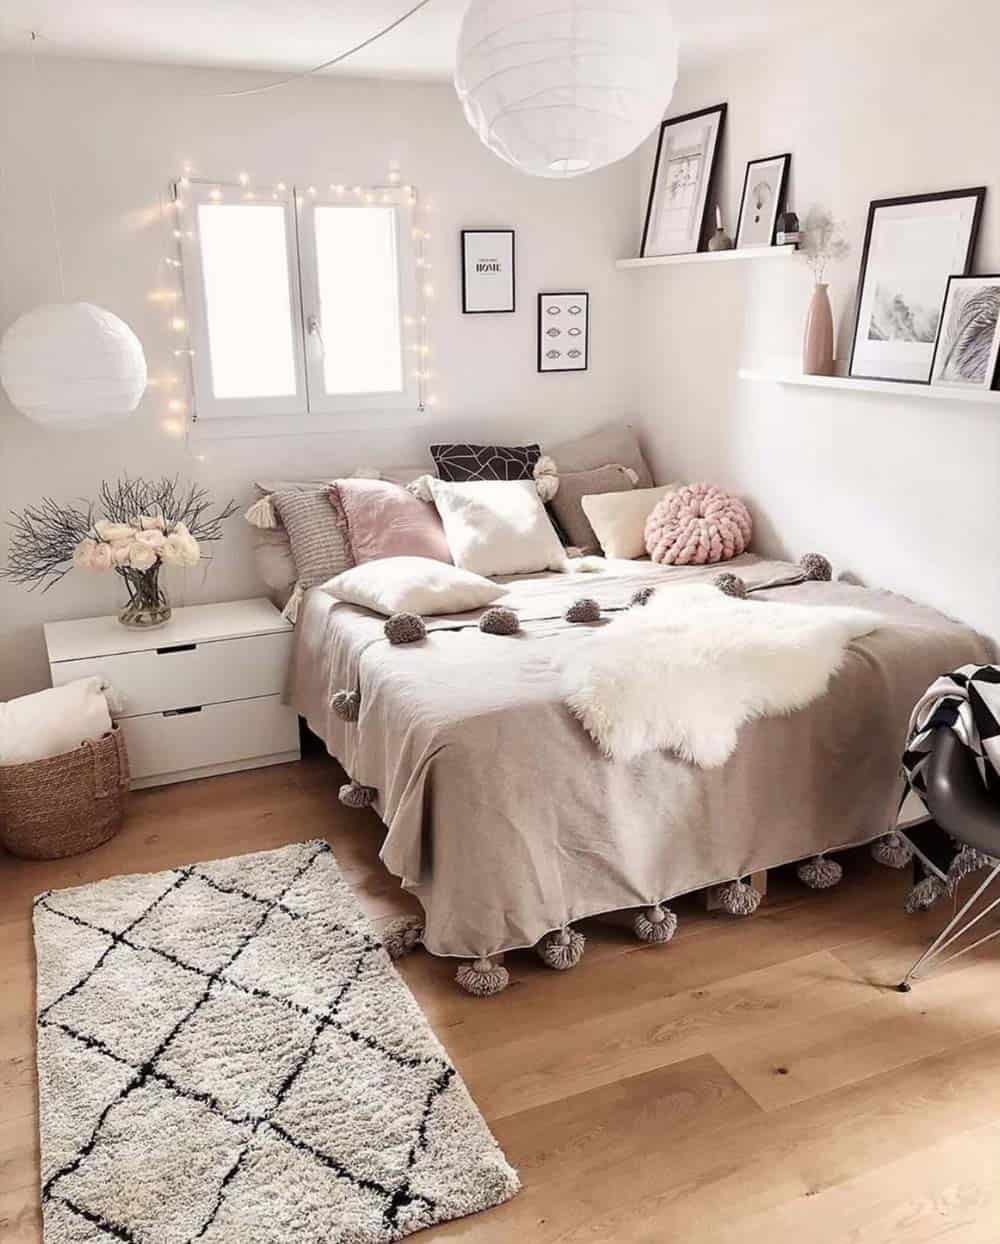 Thiết kế phòng của bé gái với gam màu trắng và hồng nhạt